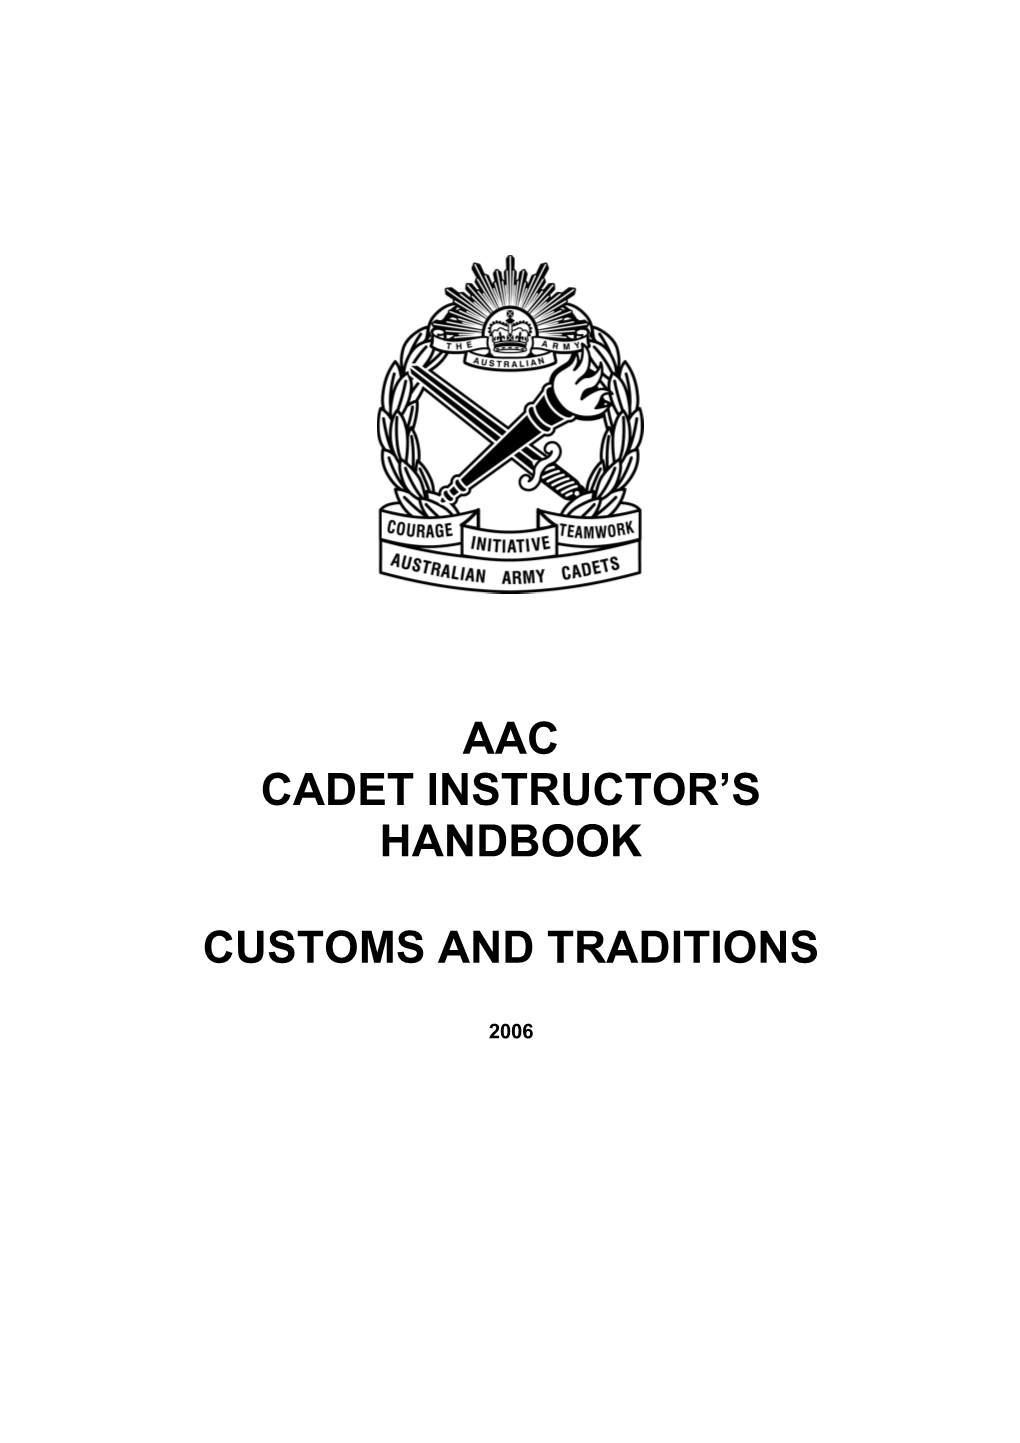 Cadet Instructor's Handbook